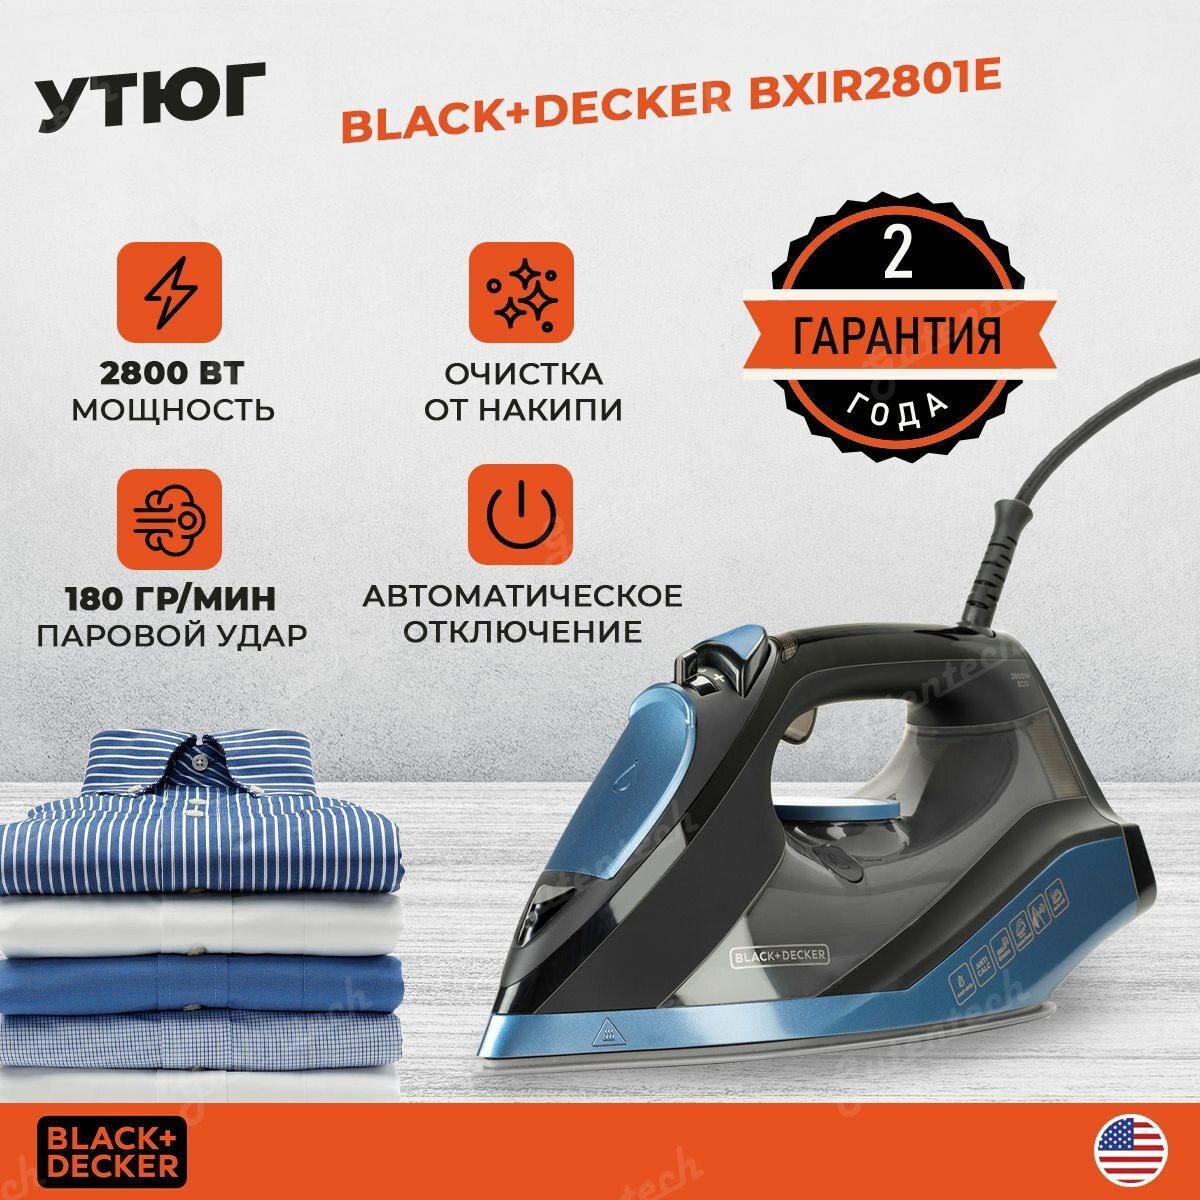 Утюг Black+Decker BXIR2801E / синий / 2800 Вт